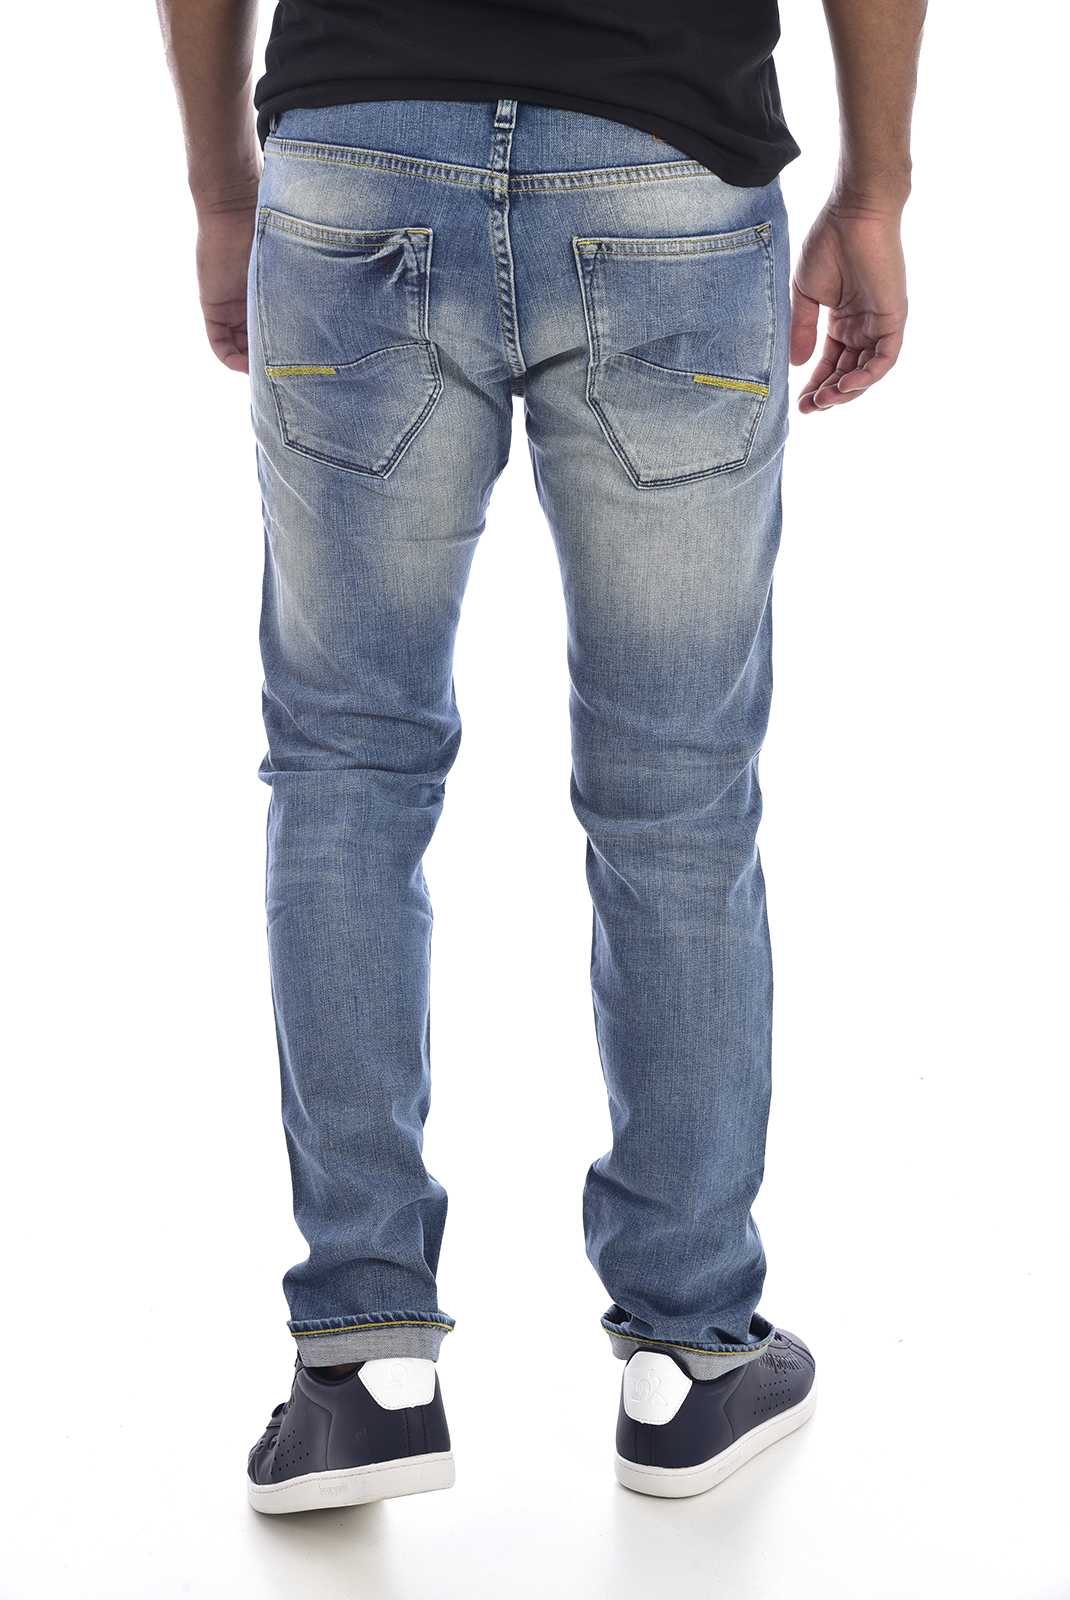 Meltin Pot Jeans Stretch Regular Bleu Melton D1577 Ub521 